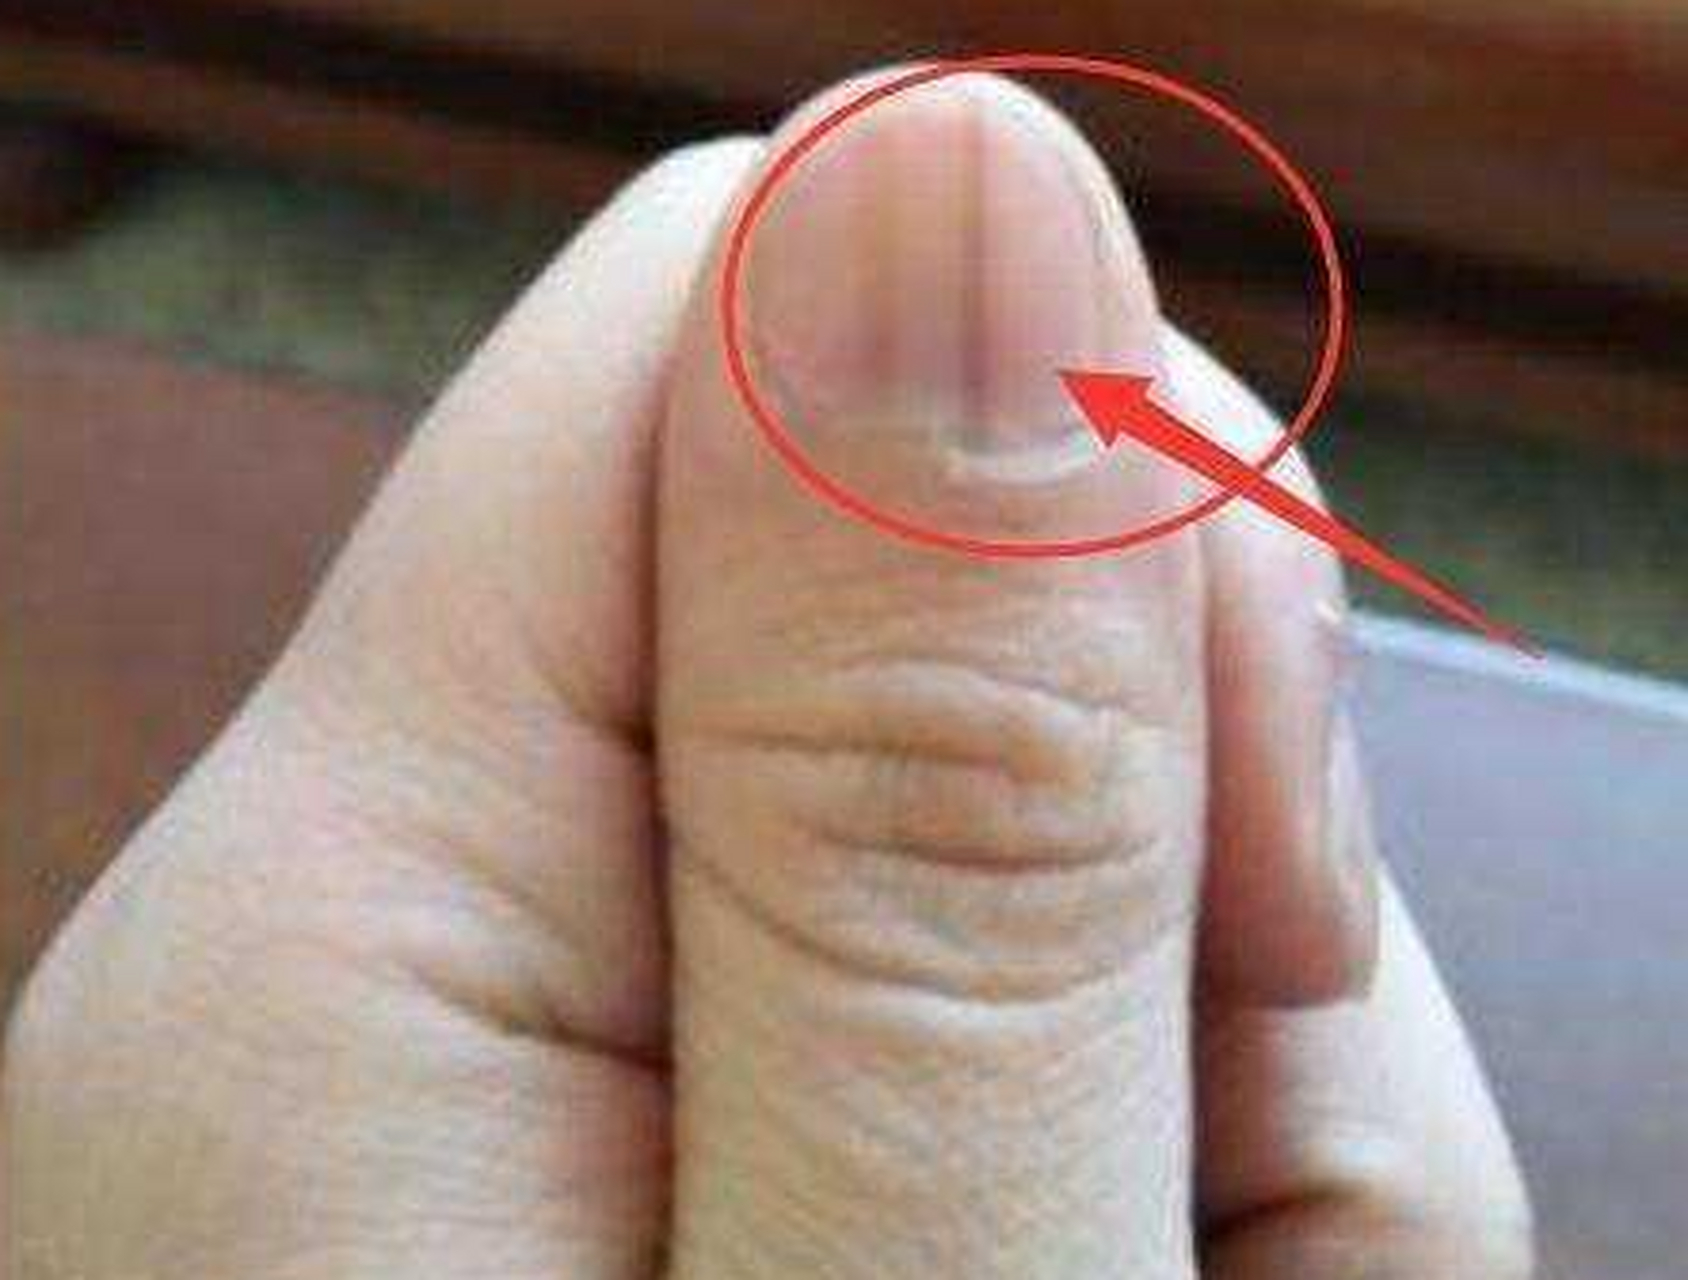 梁女士30岁,二胎孕14周,突然发现大拇指指甲有两条灰色的线,刚开始也